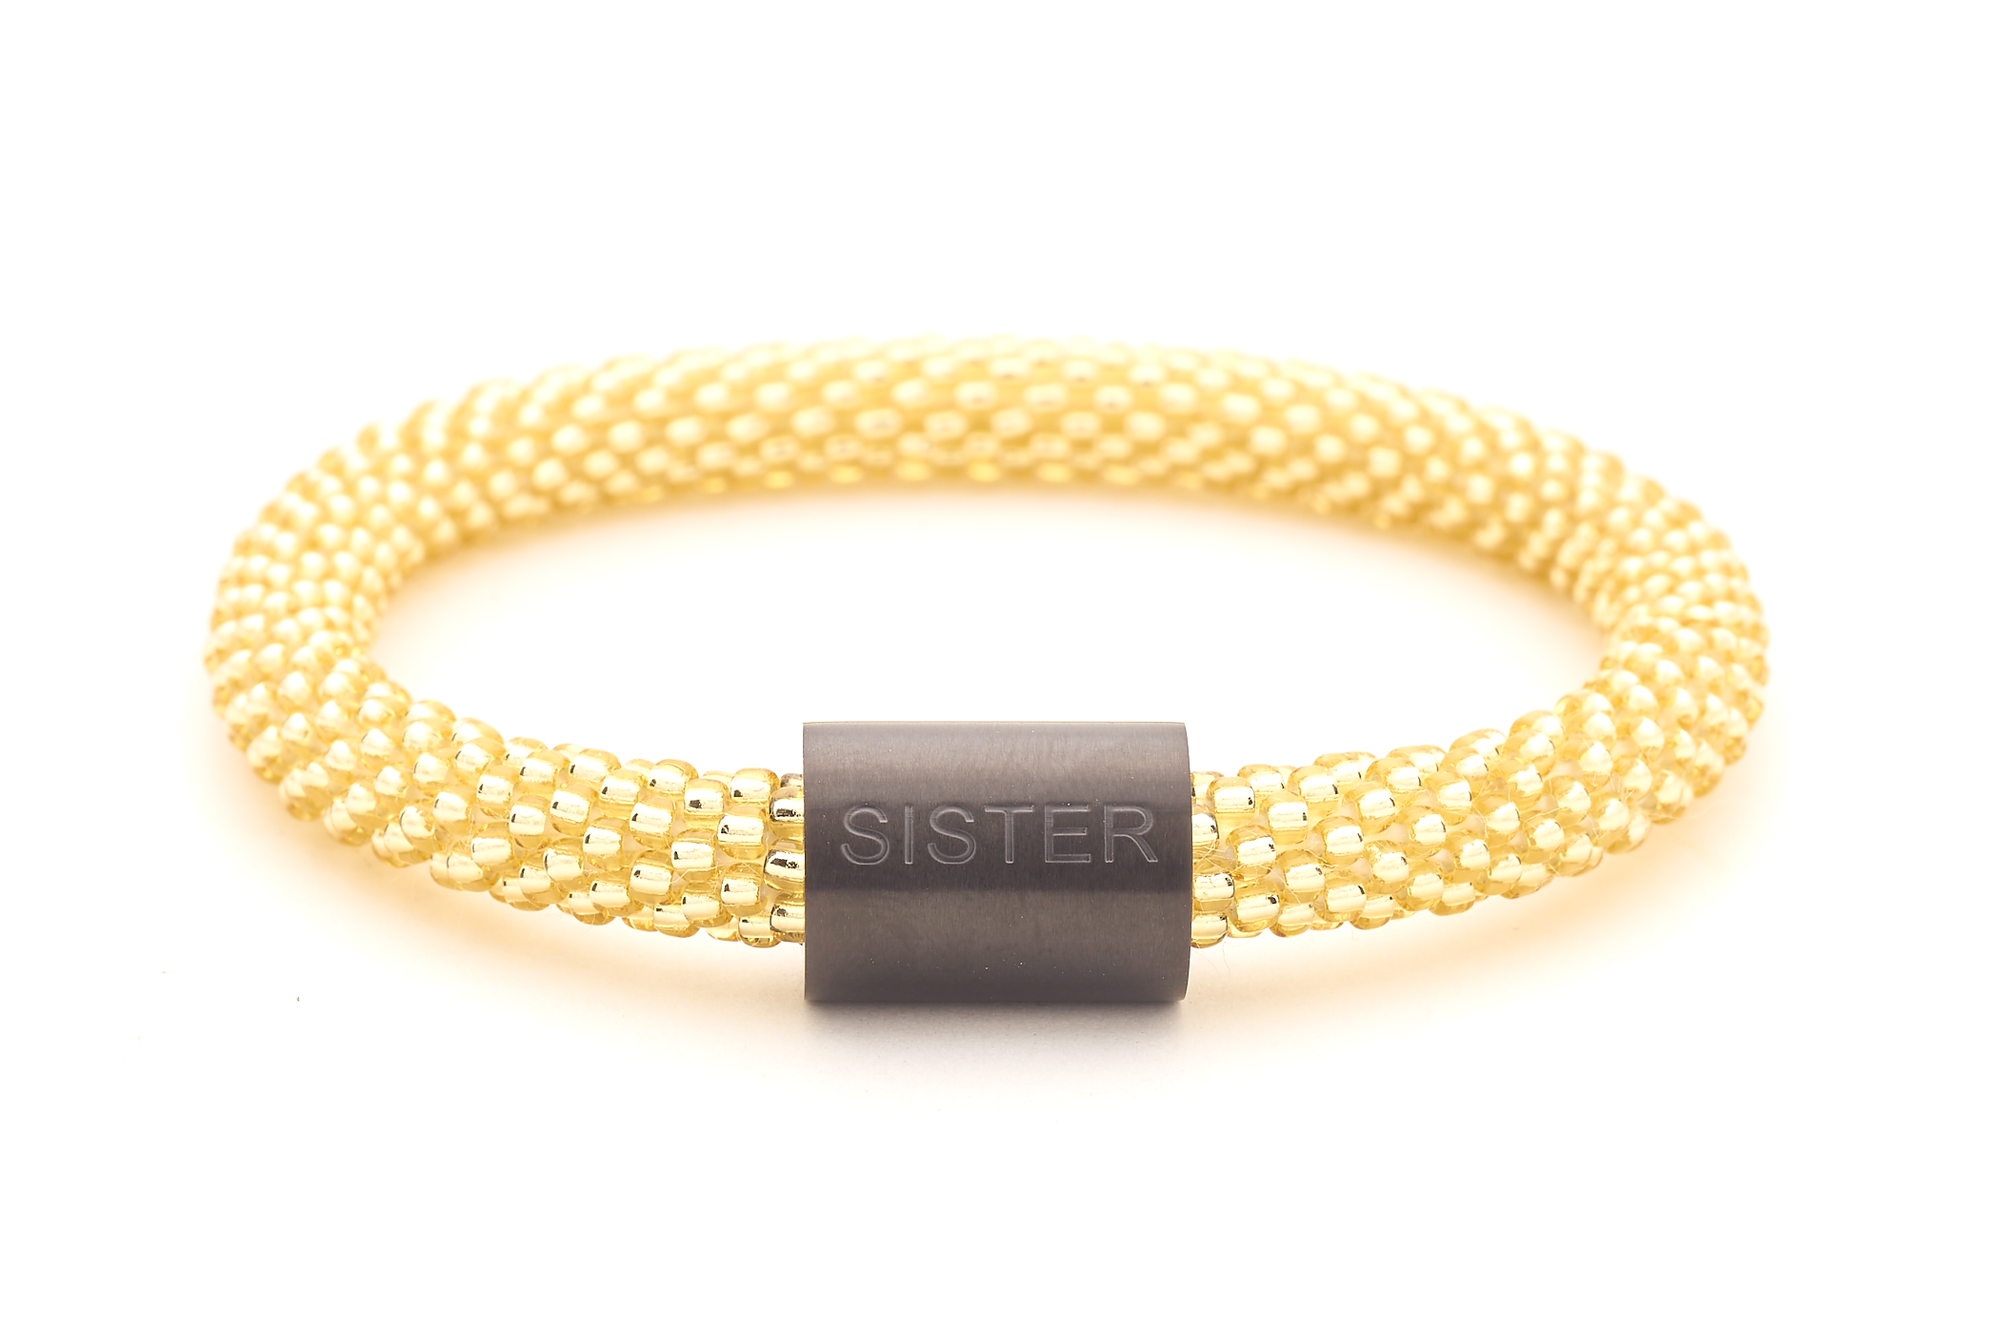 Sashka Co. Extended 8" Bracelet Champagne Gold / w Black Charm Sister Charm Bracelet - Extended 8"